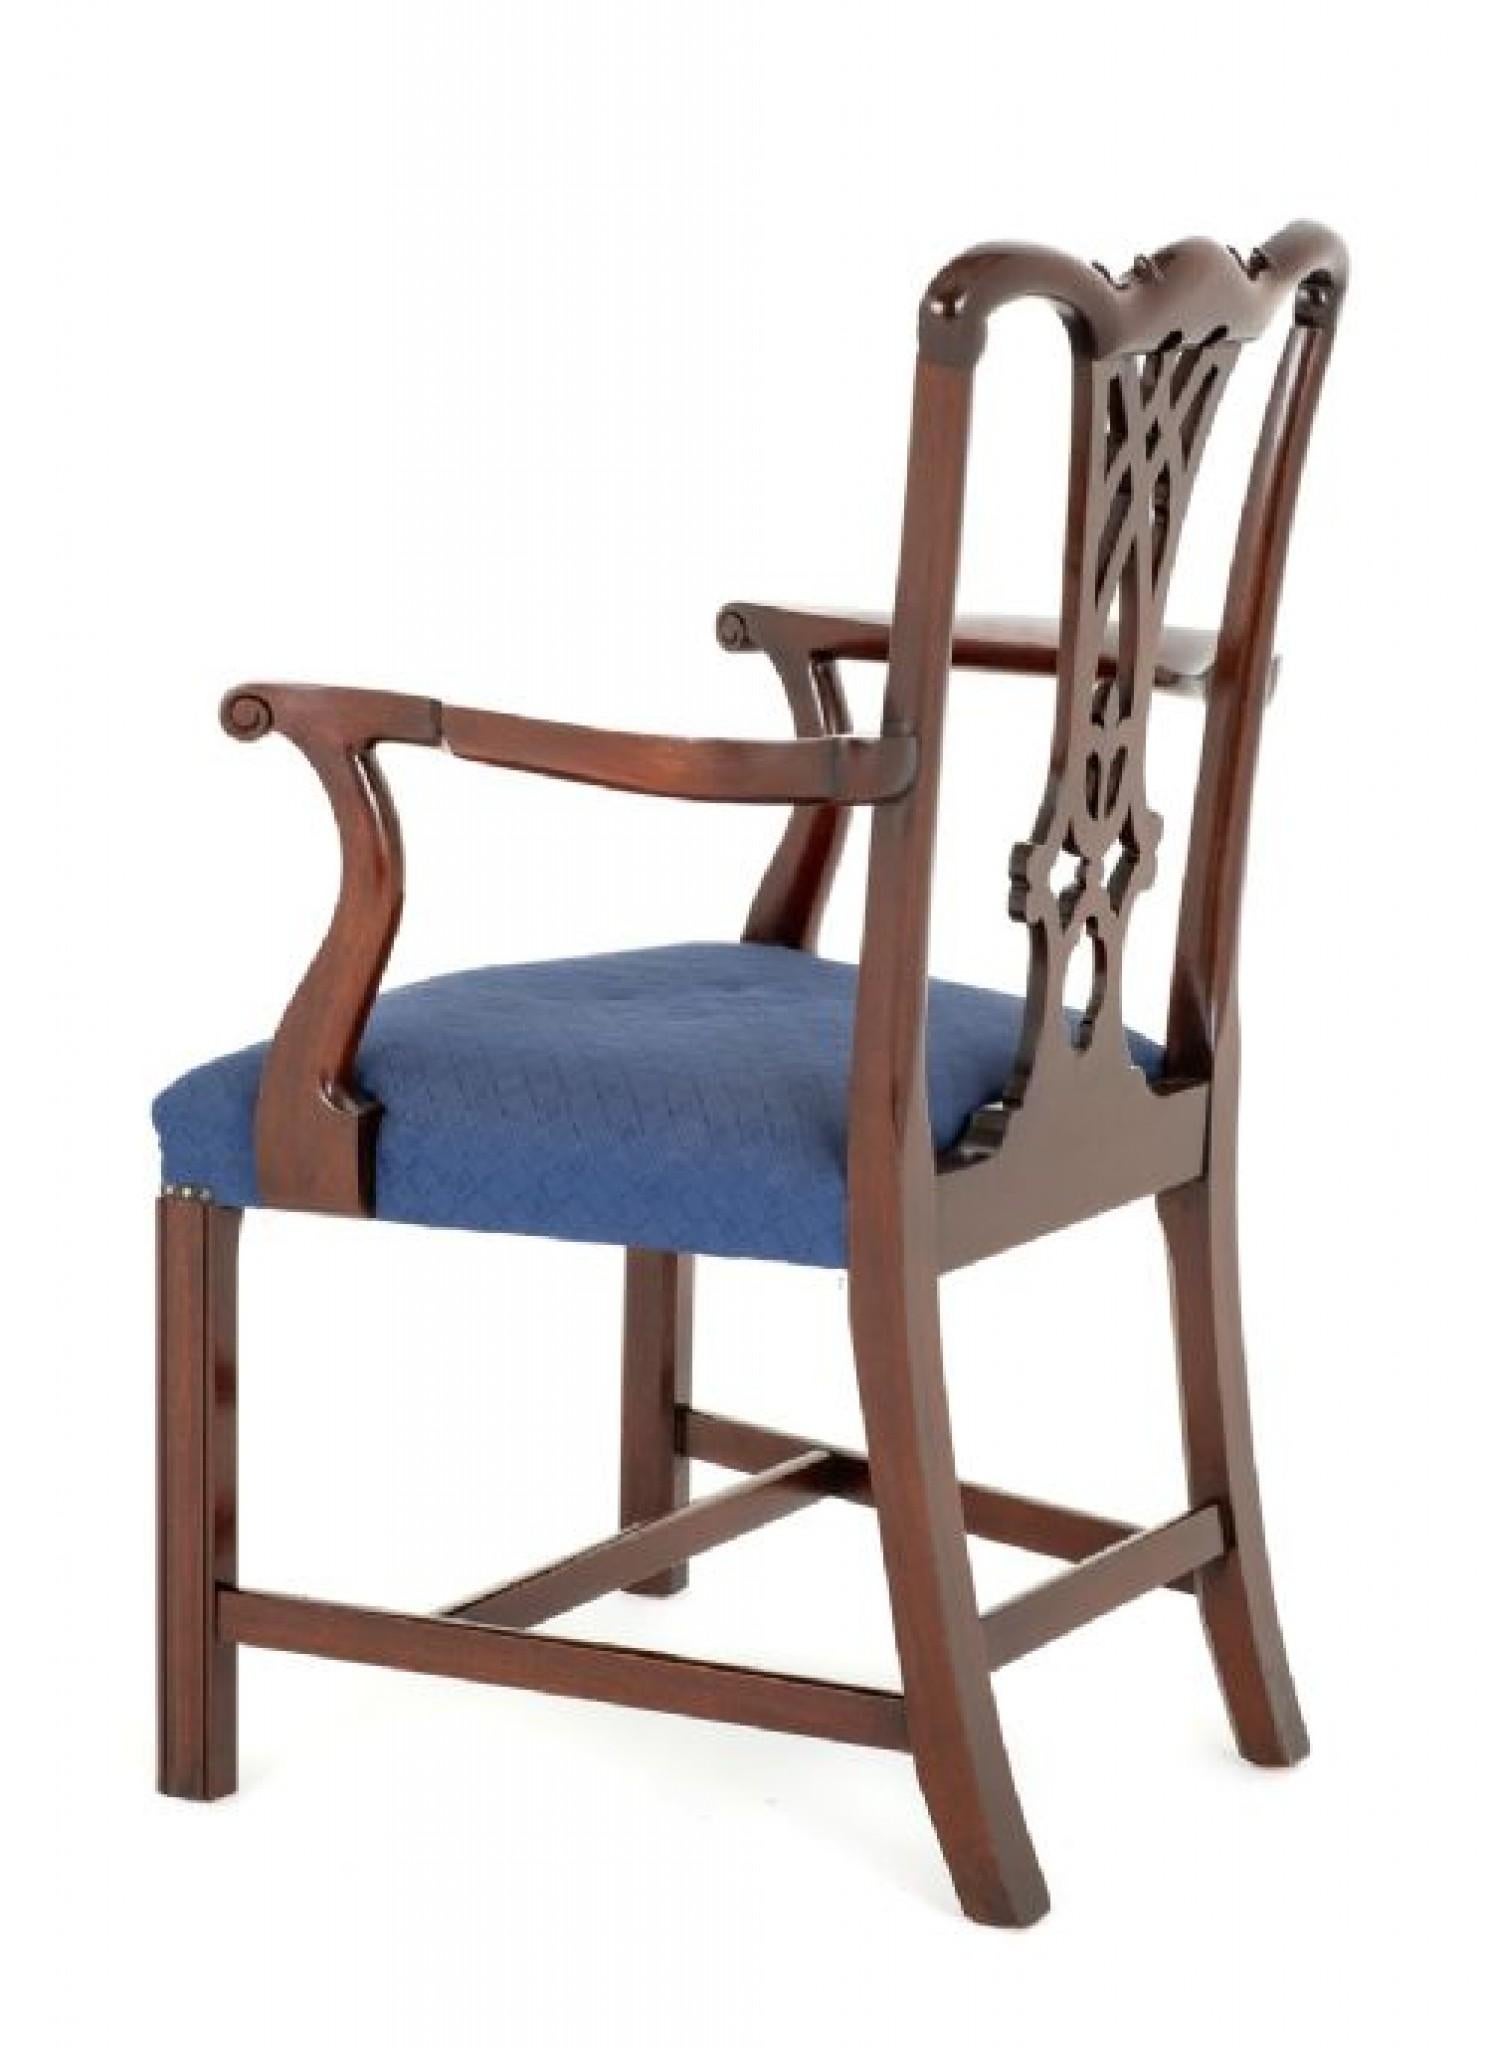 Satz von 10 (8 + 2) Esszimmerstühlen aus Mahagoni im Chippendale-Stil von guter Qualität.
Diese Stühle stehen auf quadratischen Vorderbeinen mit geformten Hinterbeinen und haben einen 